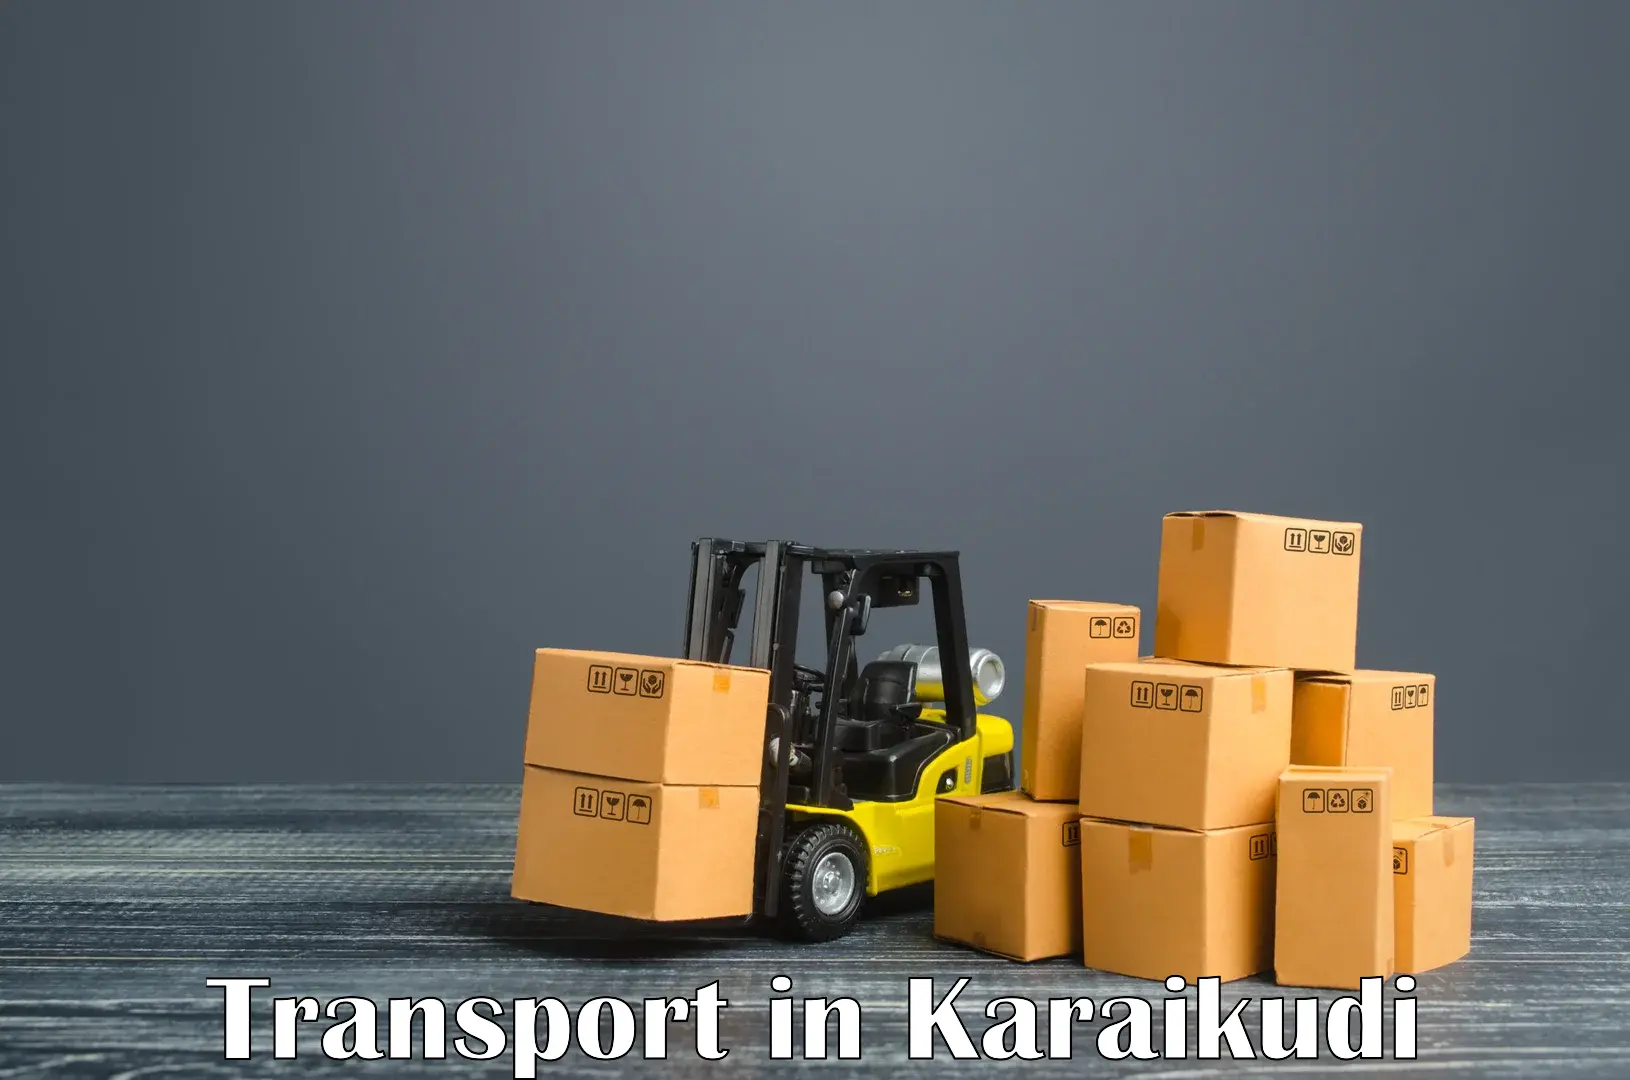 Furniture transport service in Karaikudi